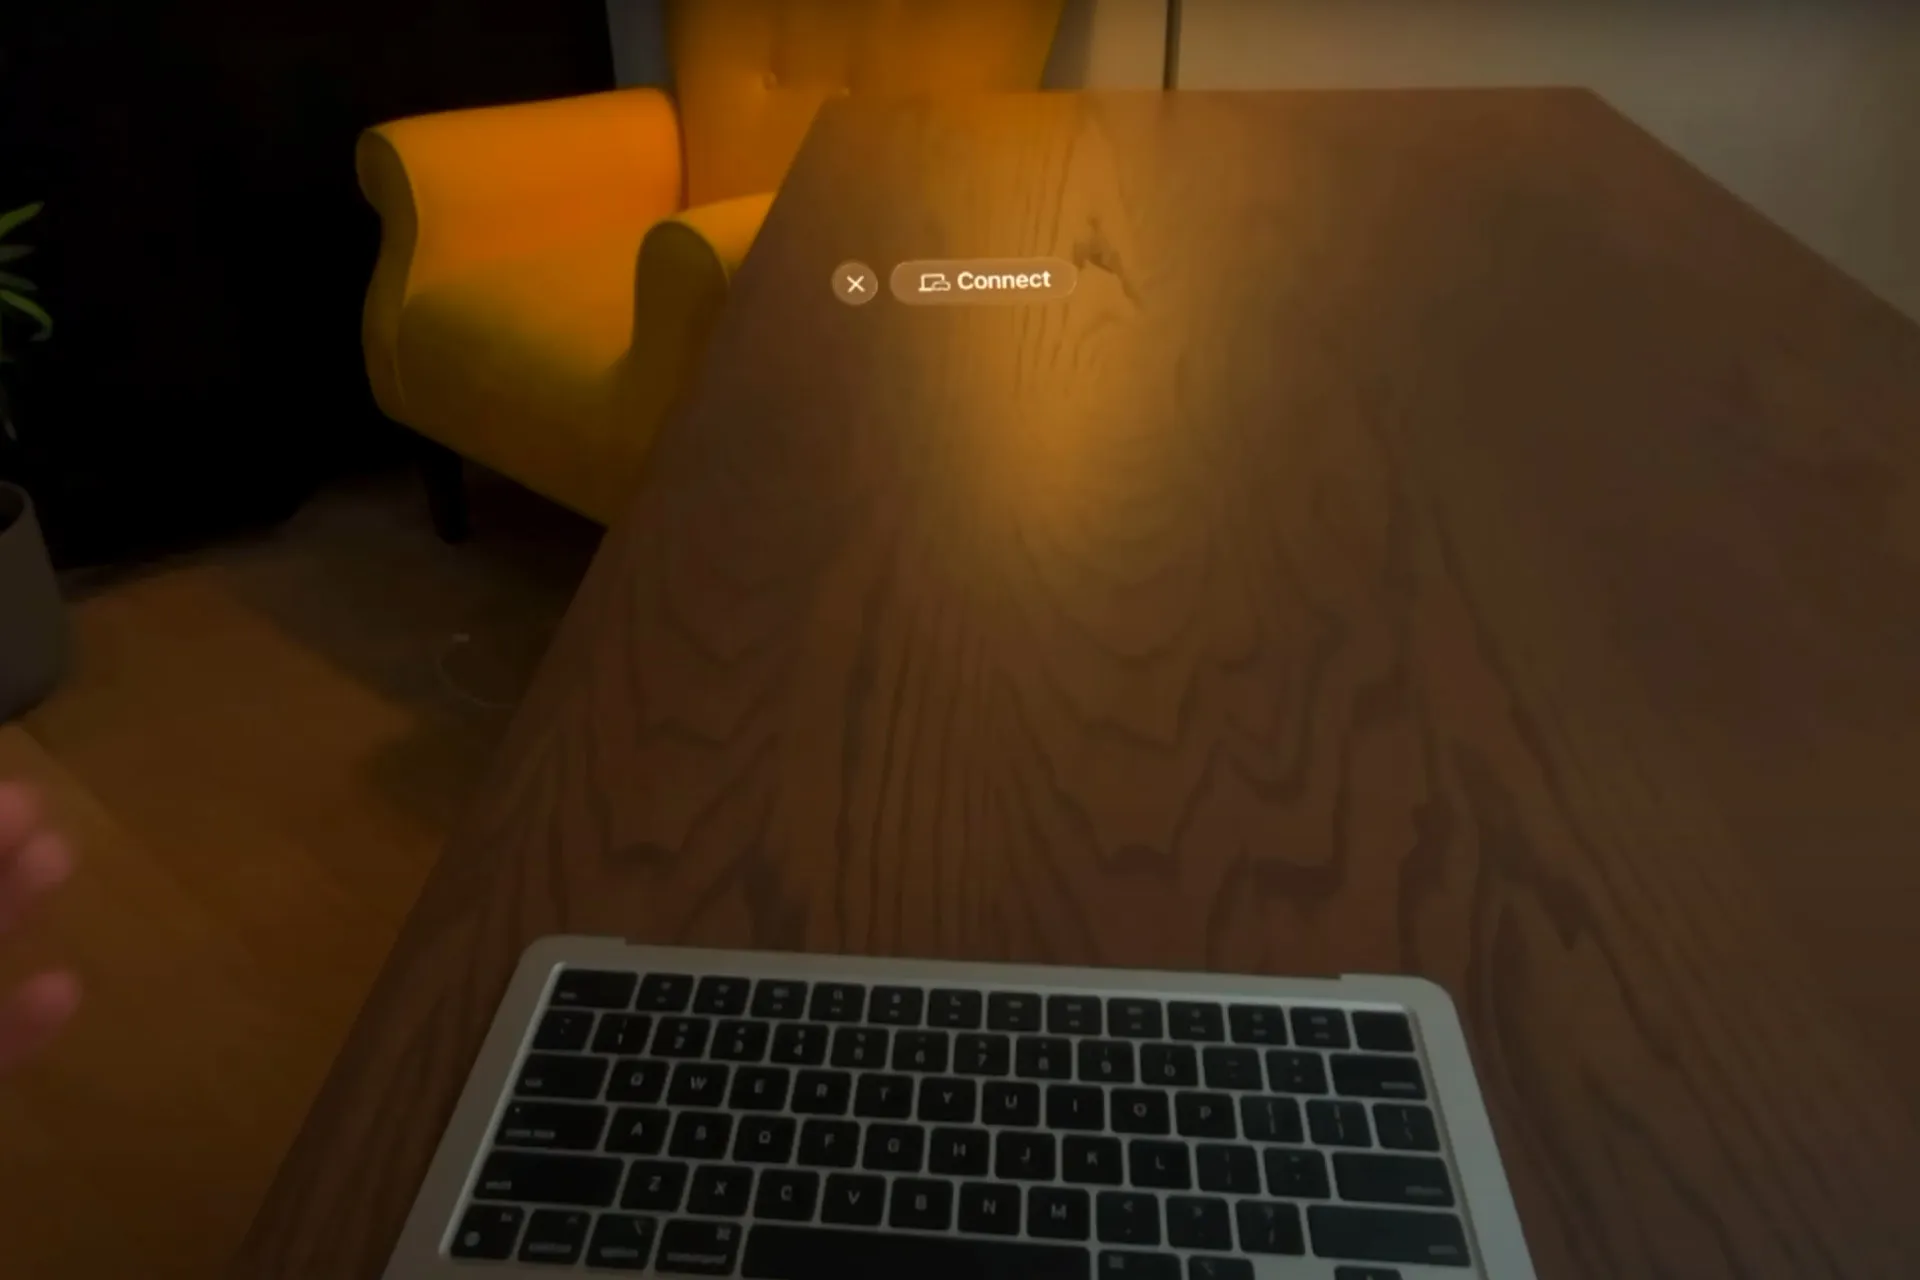 Vision Pro обнаруживает MacBook и предлагает присоединиться, даже не имея экрана.